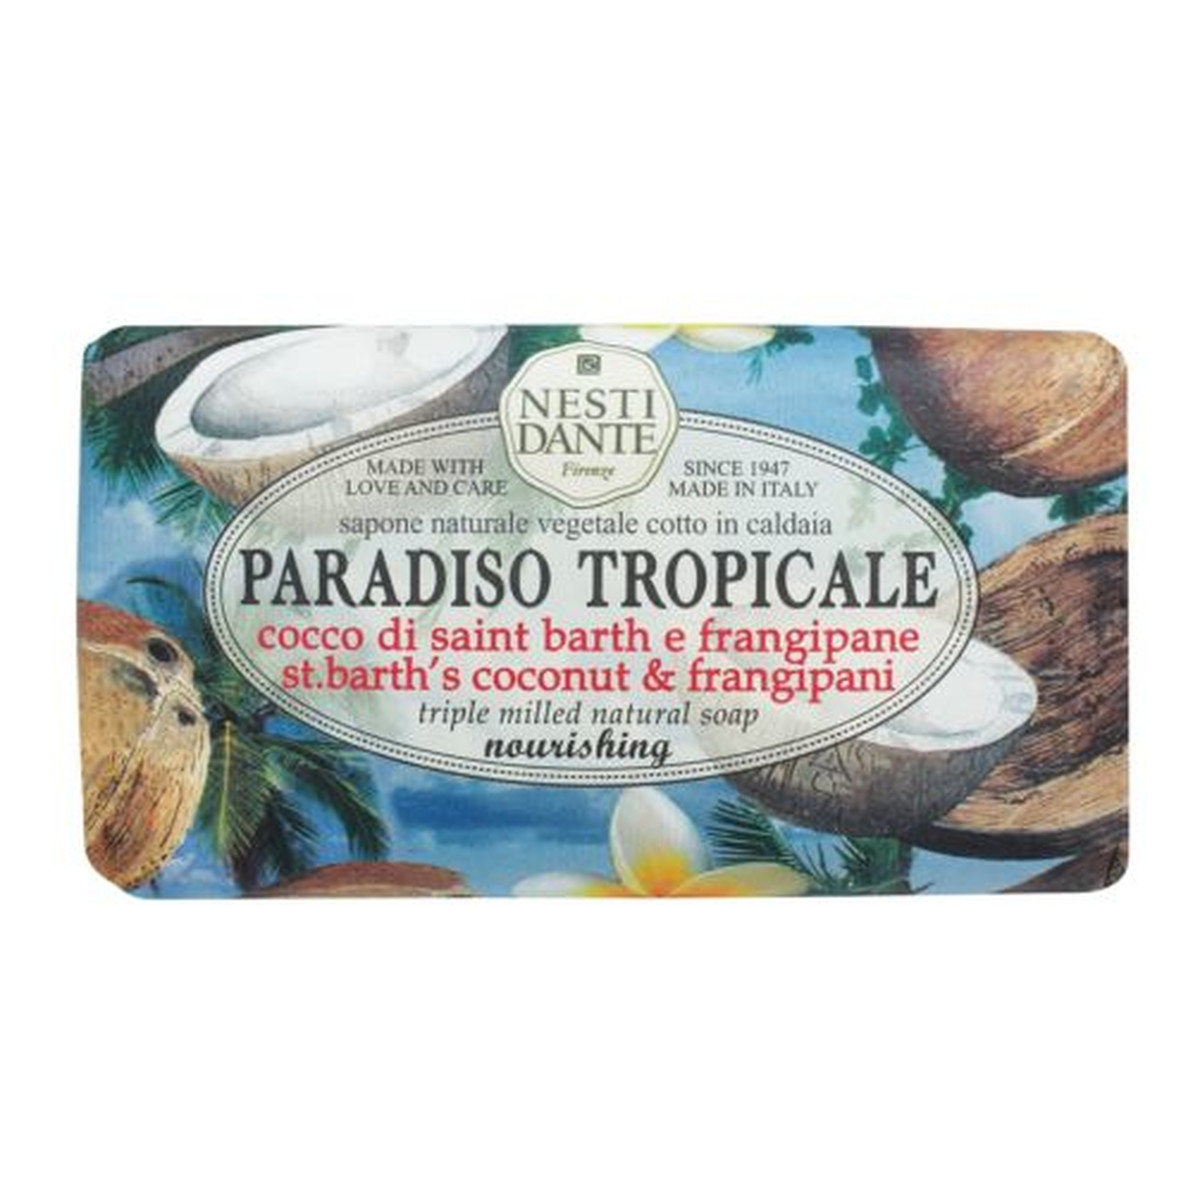 Nesti Dante Paradiso Tropicale Mydło toaletowe kokos 250g